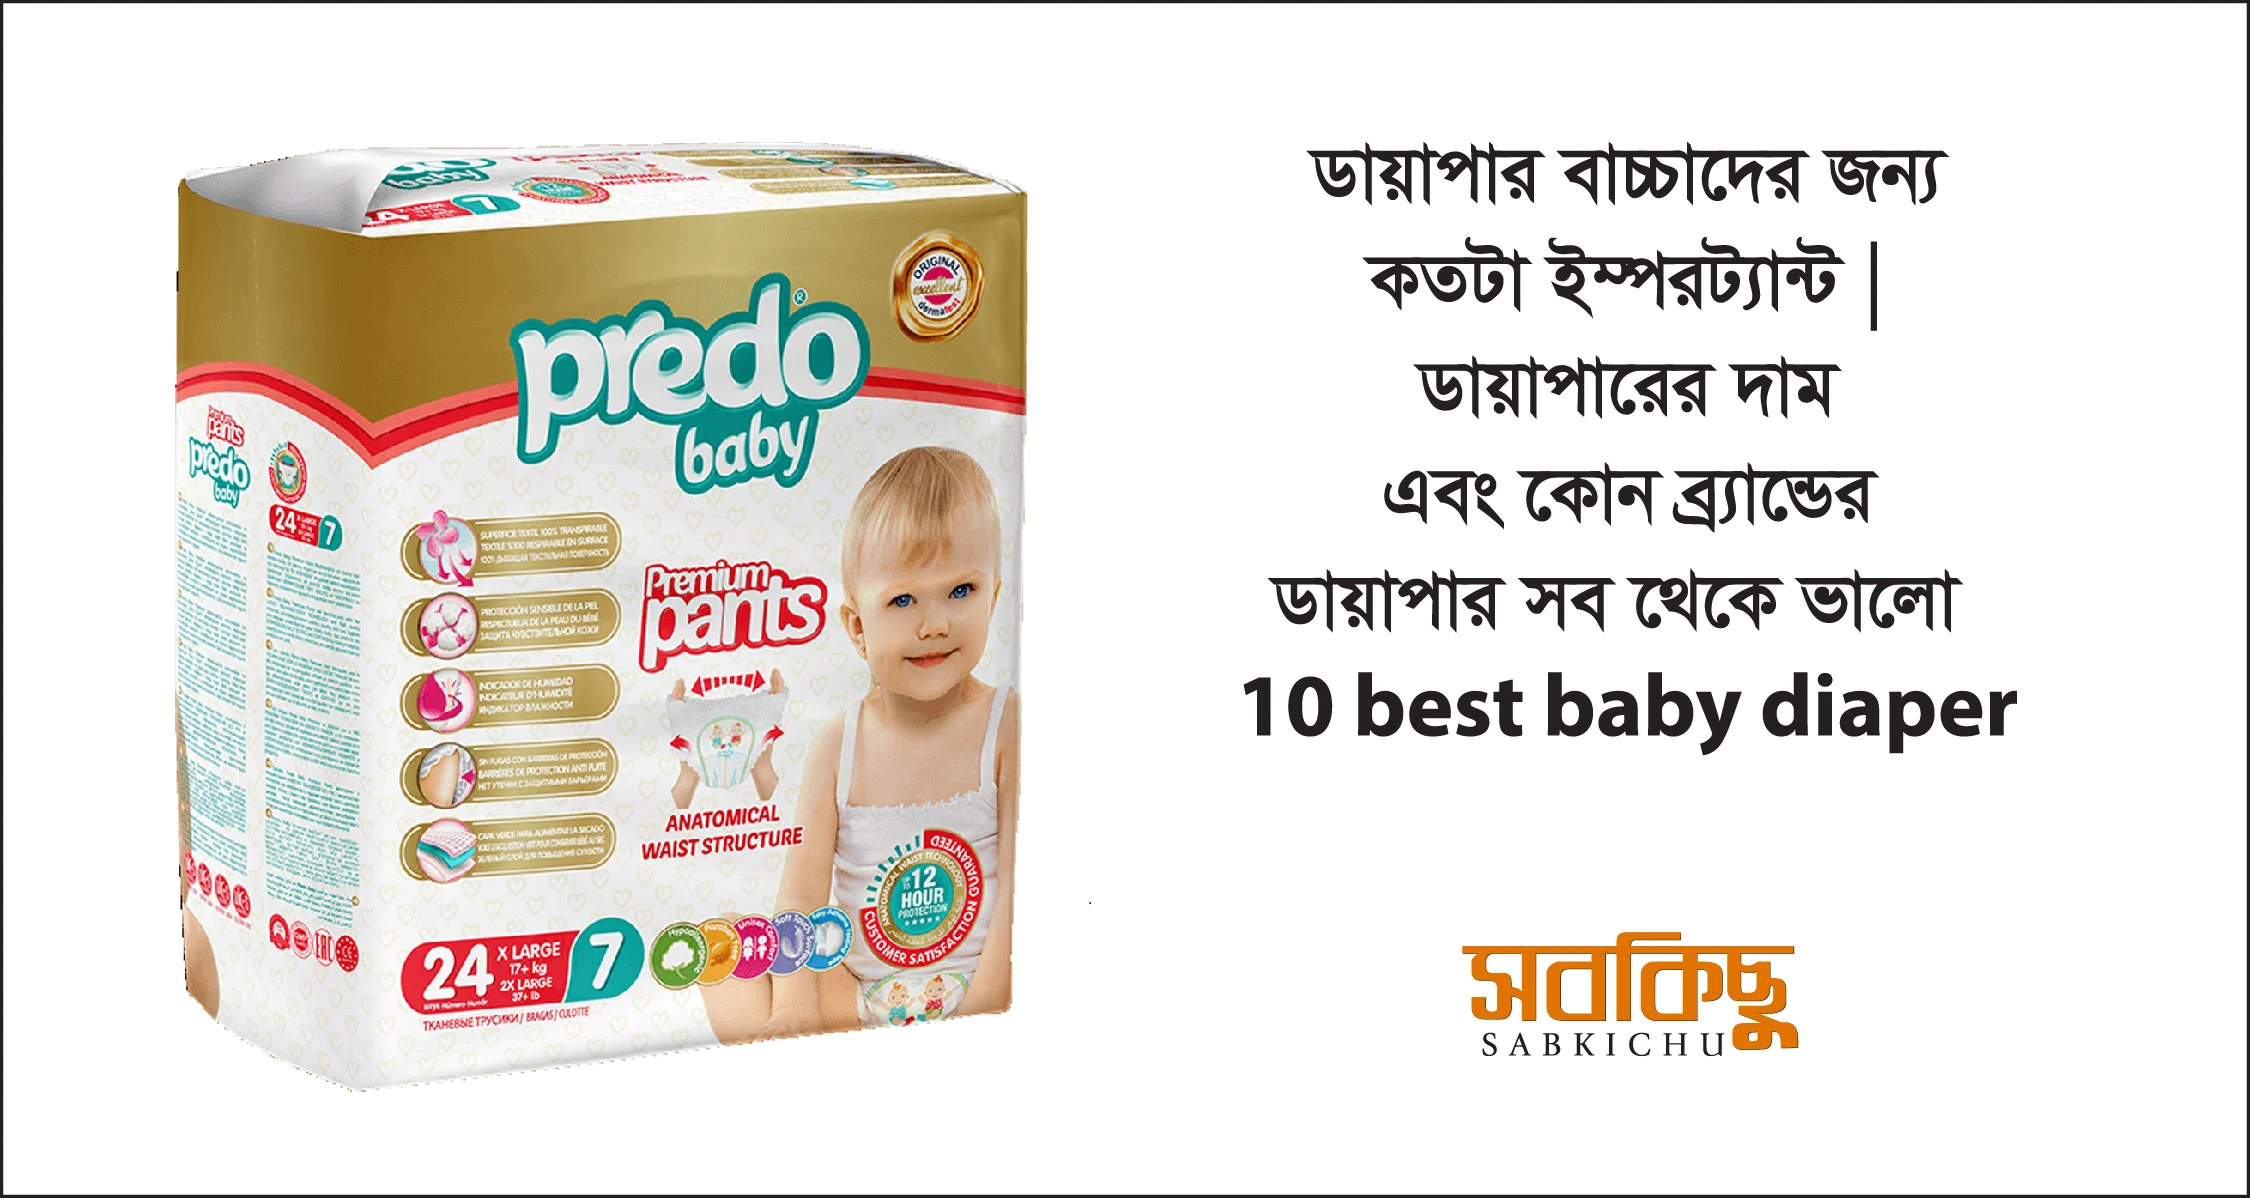 ডায়াপার বাচ্চাদের জন্য কতটা ইম্পরট্যান্ট | ডায়াপারের দাম এবং কোন ব্র্যান্ডের ডায়াপার সব থেকে ভালো |10 best baby diaper